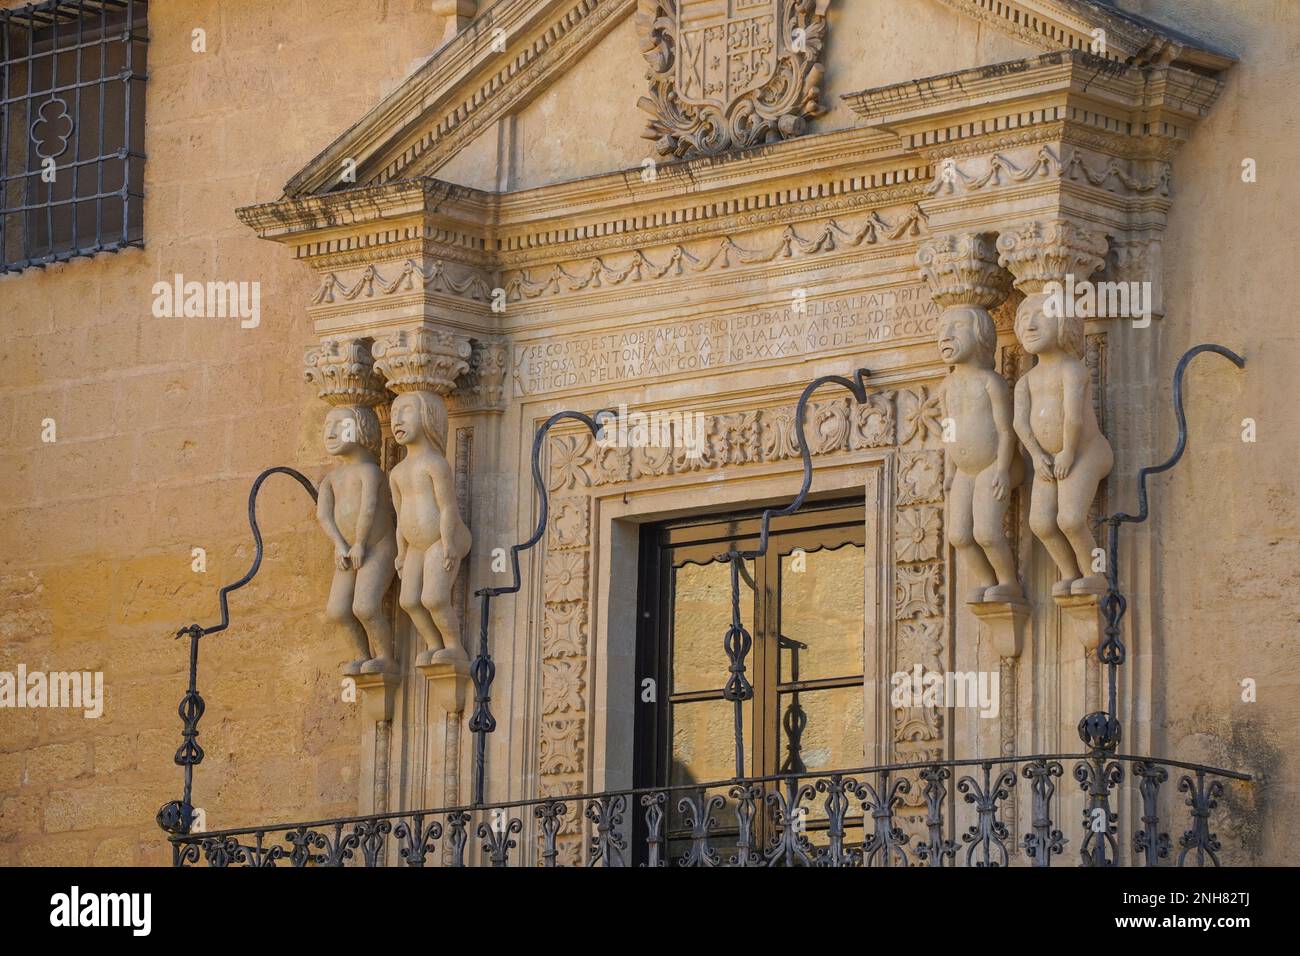 La façade principale du Palacio de Salvatierra, palais Salvatierra, avec des sculptures inca, Ronda, Andalousie Espagne. Banque D'Images